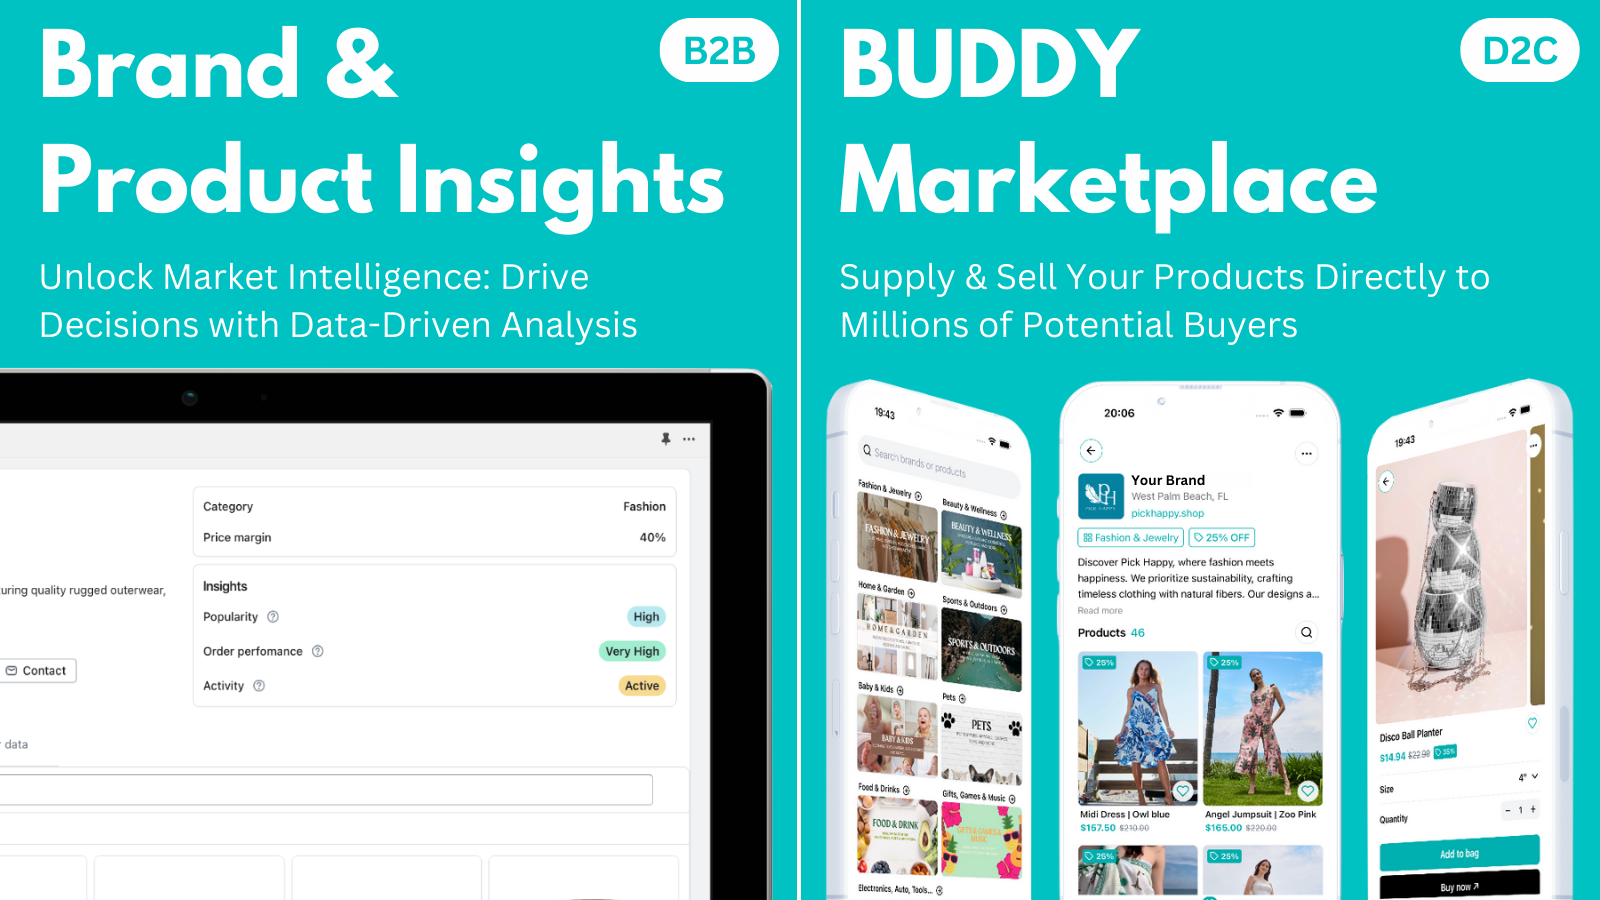 Merk- & Productinzichten en BUDDY Marketplace